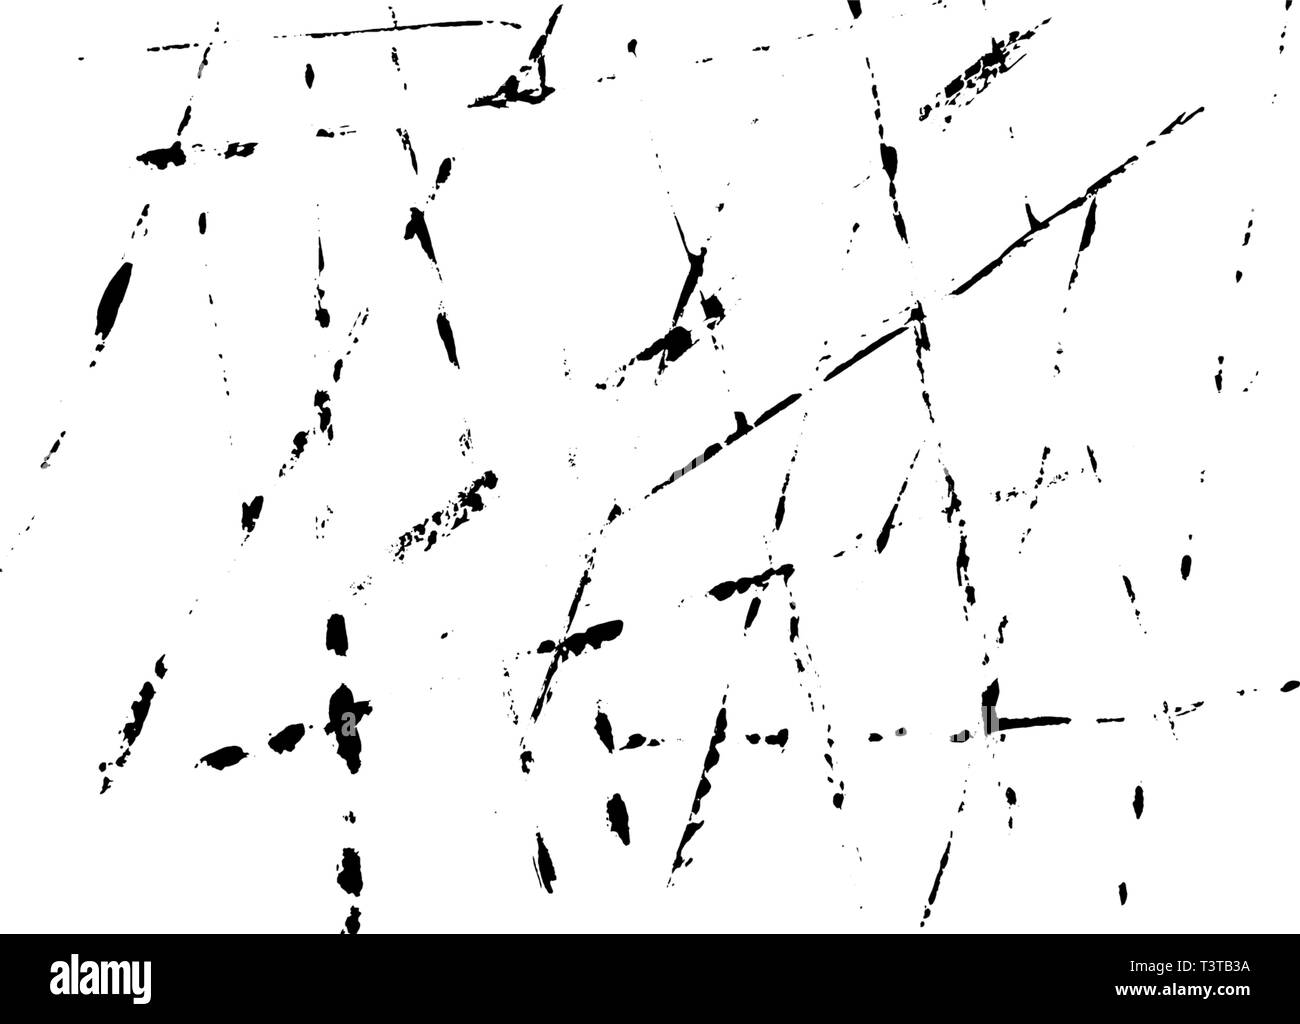 Grunge fond d'arraché des lignes noires sur fond blanc. Résumé des coupes, frottis sur la surface Illustration de Vecteur